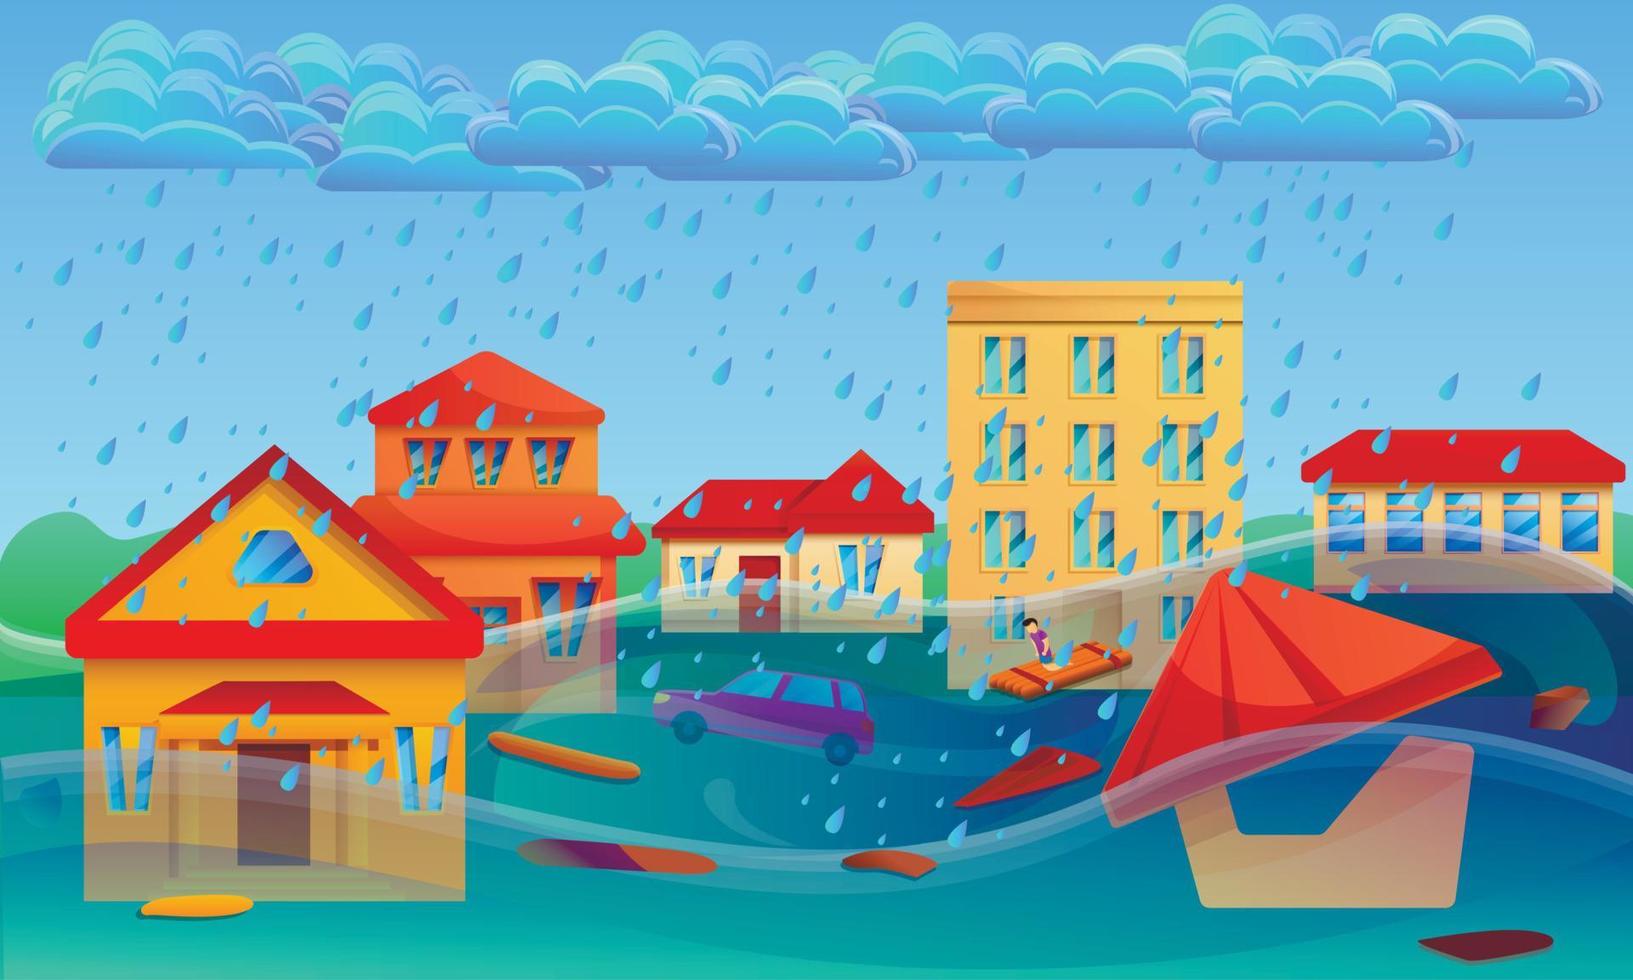 banner de conceito de cataclismo de inundação, estilo cartoon vetor